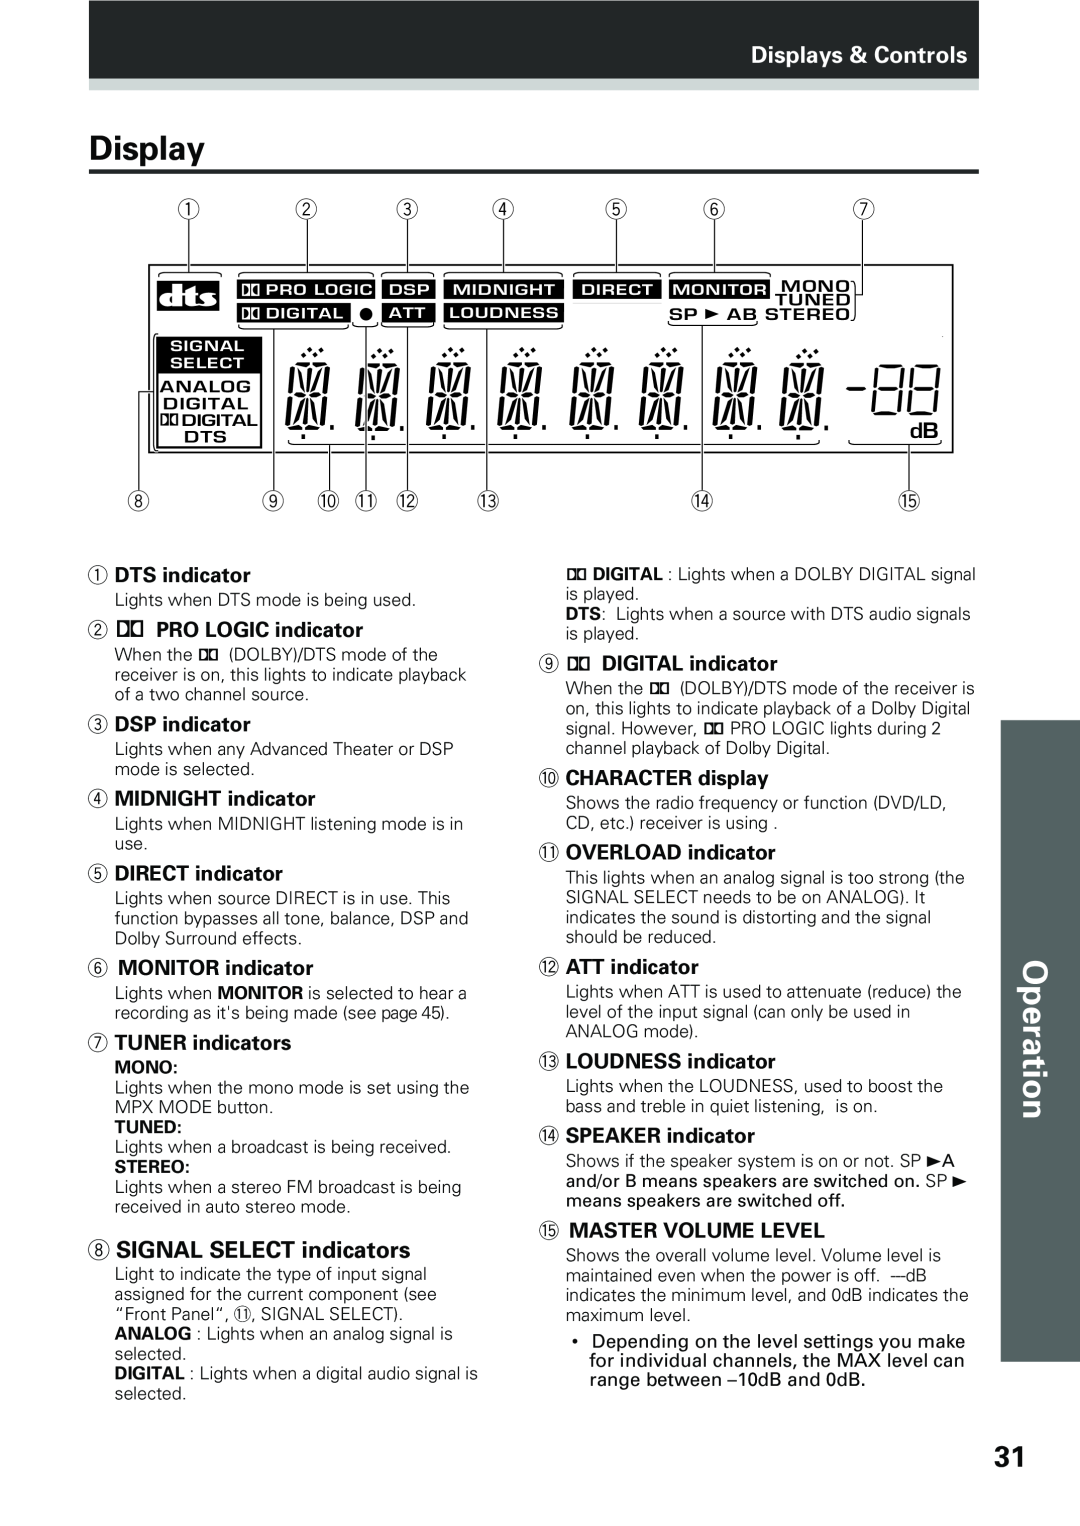 Pioneer VSX-D409, VSX-D509S manual Operation, Displays & Controls, 8SIGNAL SELECT indicators 